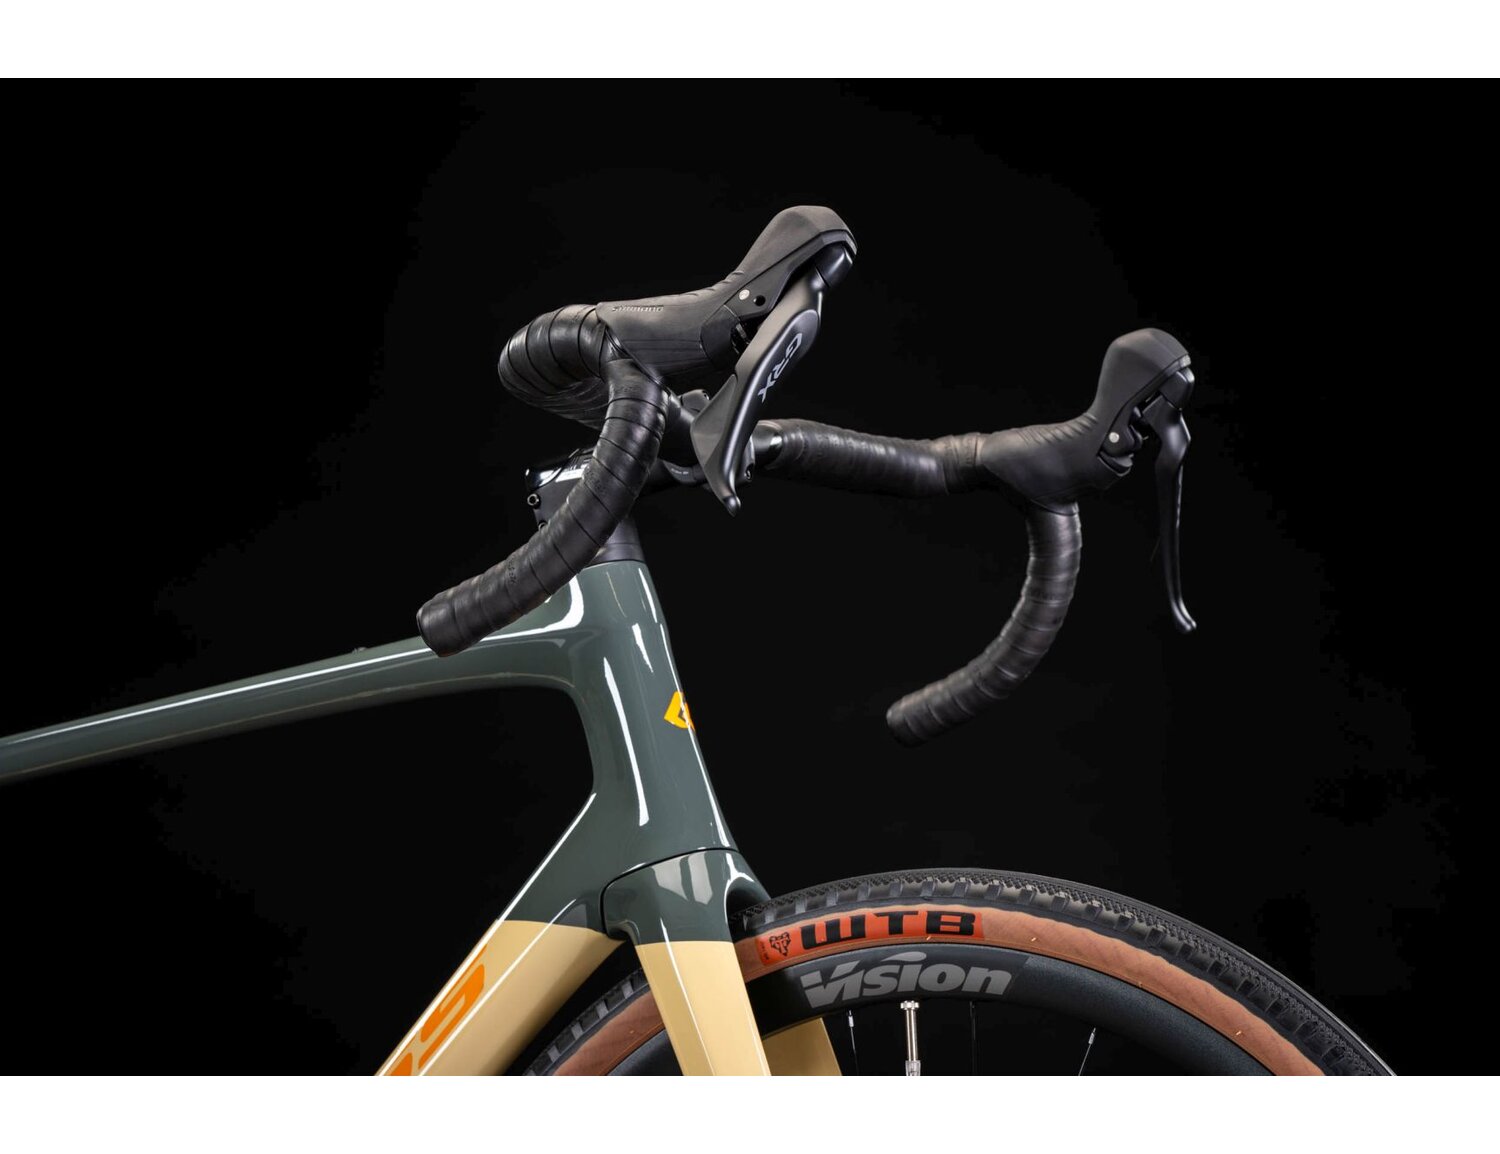  Carbonowa rama, sztywny carbonowy widelec, carbonowa kierownica oraz opony WTB w rowerze gravelowym KROSS Esker RS 1.0